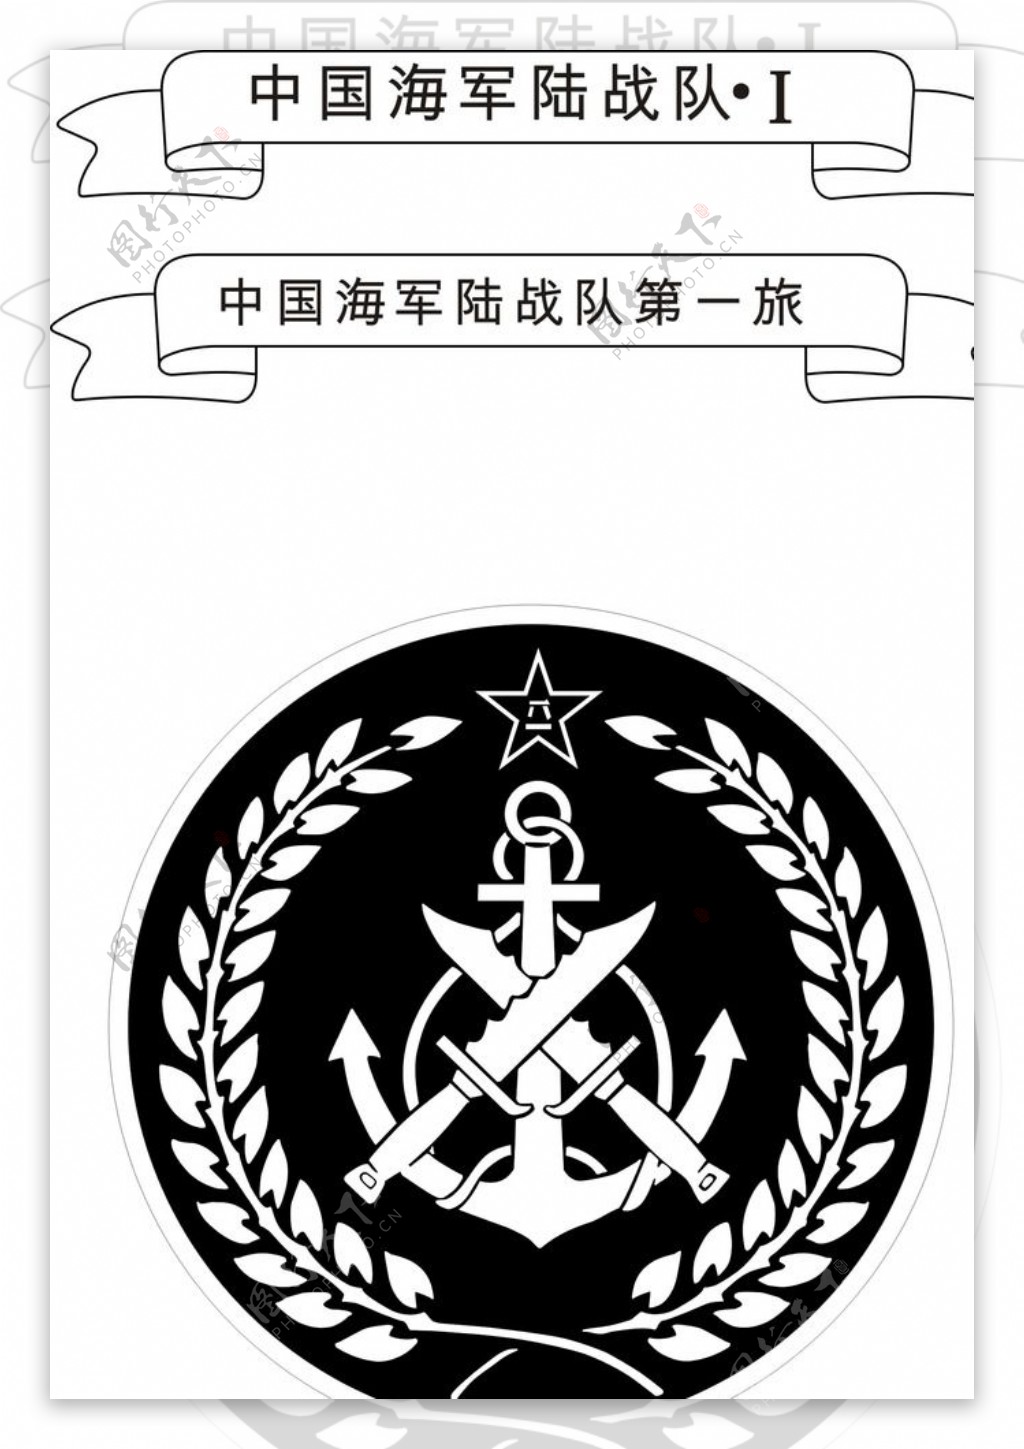 海军陆战队